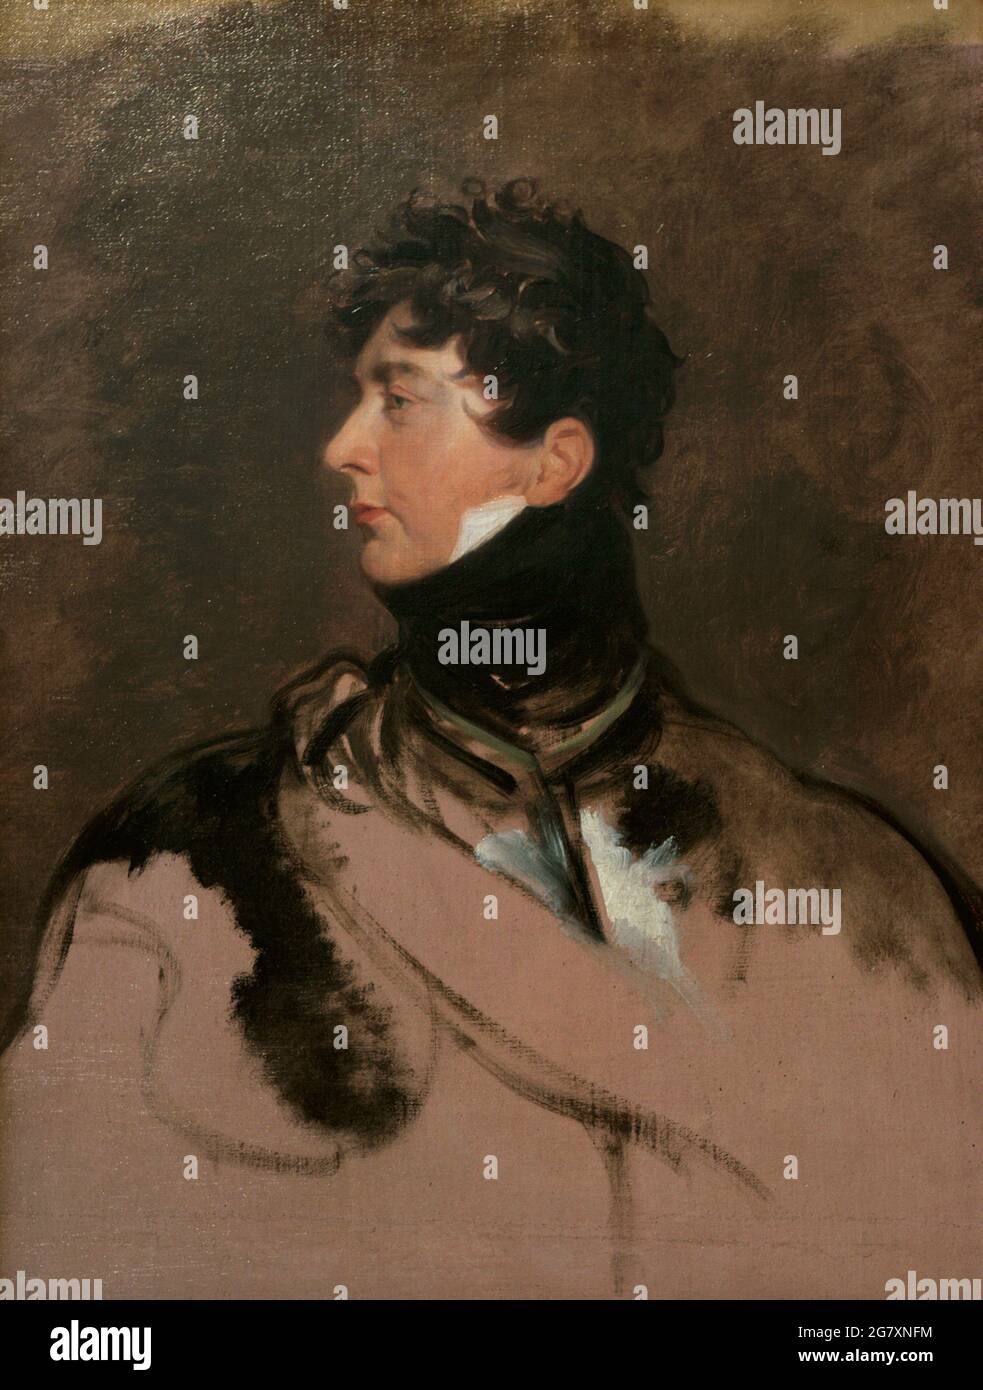 George IV (1762-1830). Rey del Reino Unido. Retrato como Príncipe de Gales, por Sir Thomas Lawrence (1769-1830). Óleo sobre lienzo (91,4 x 71,1 cm), aprox. 1814. Galería Nacional de Retratos. Londres, Inglaterra, Reino Unido. Foto de stock